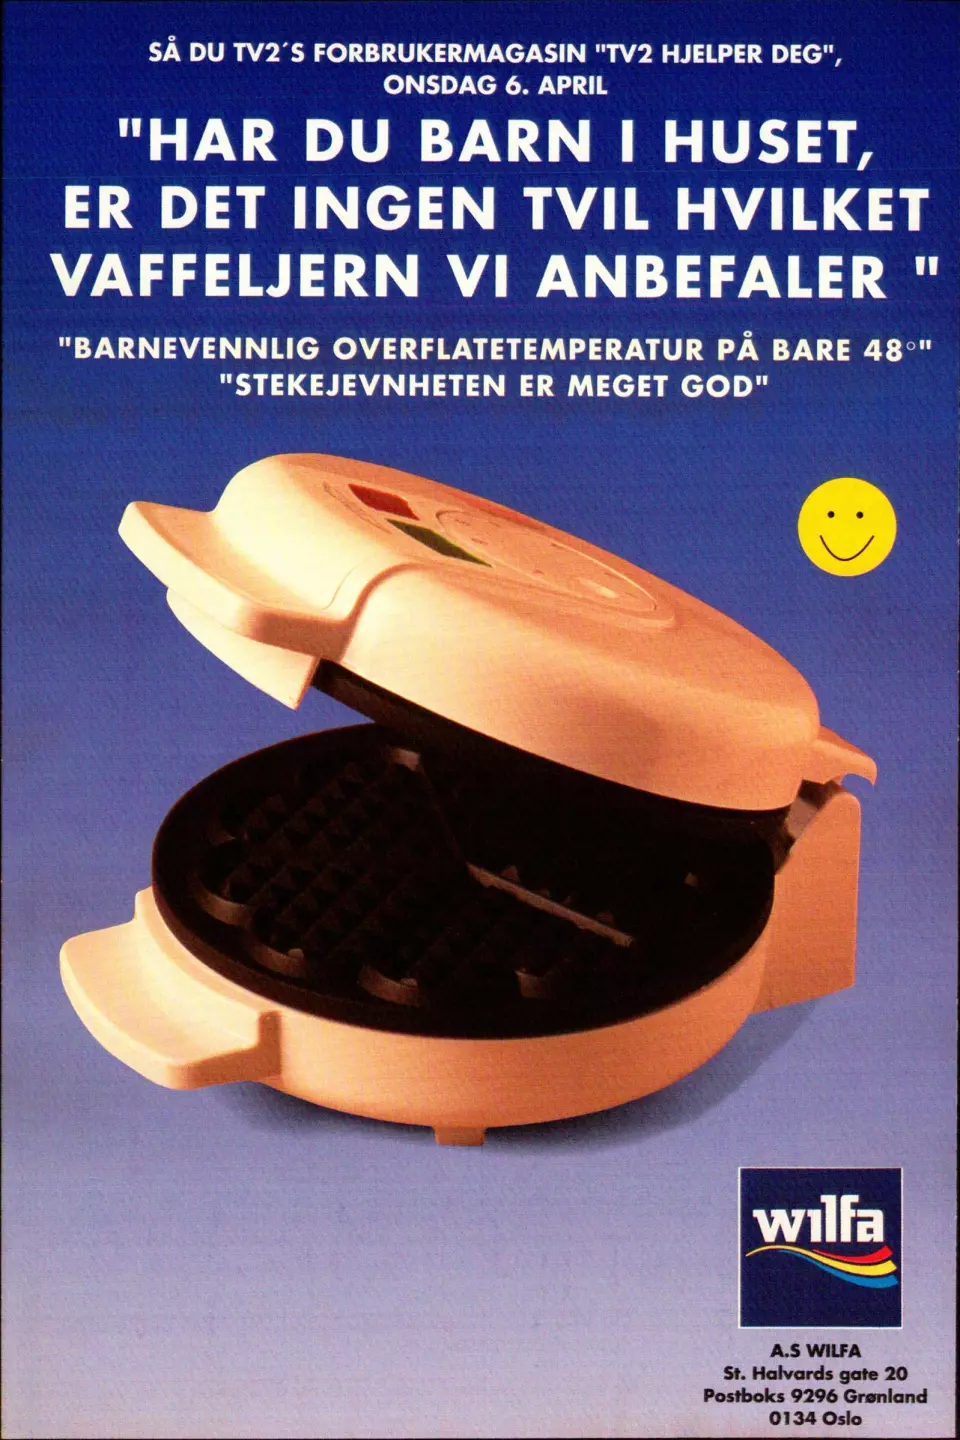 Denne annonsen rykket Wilfa inn i fagbladet Elektronikkbransjen nr. 4/1994.